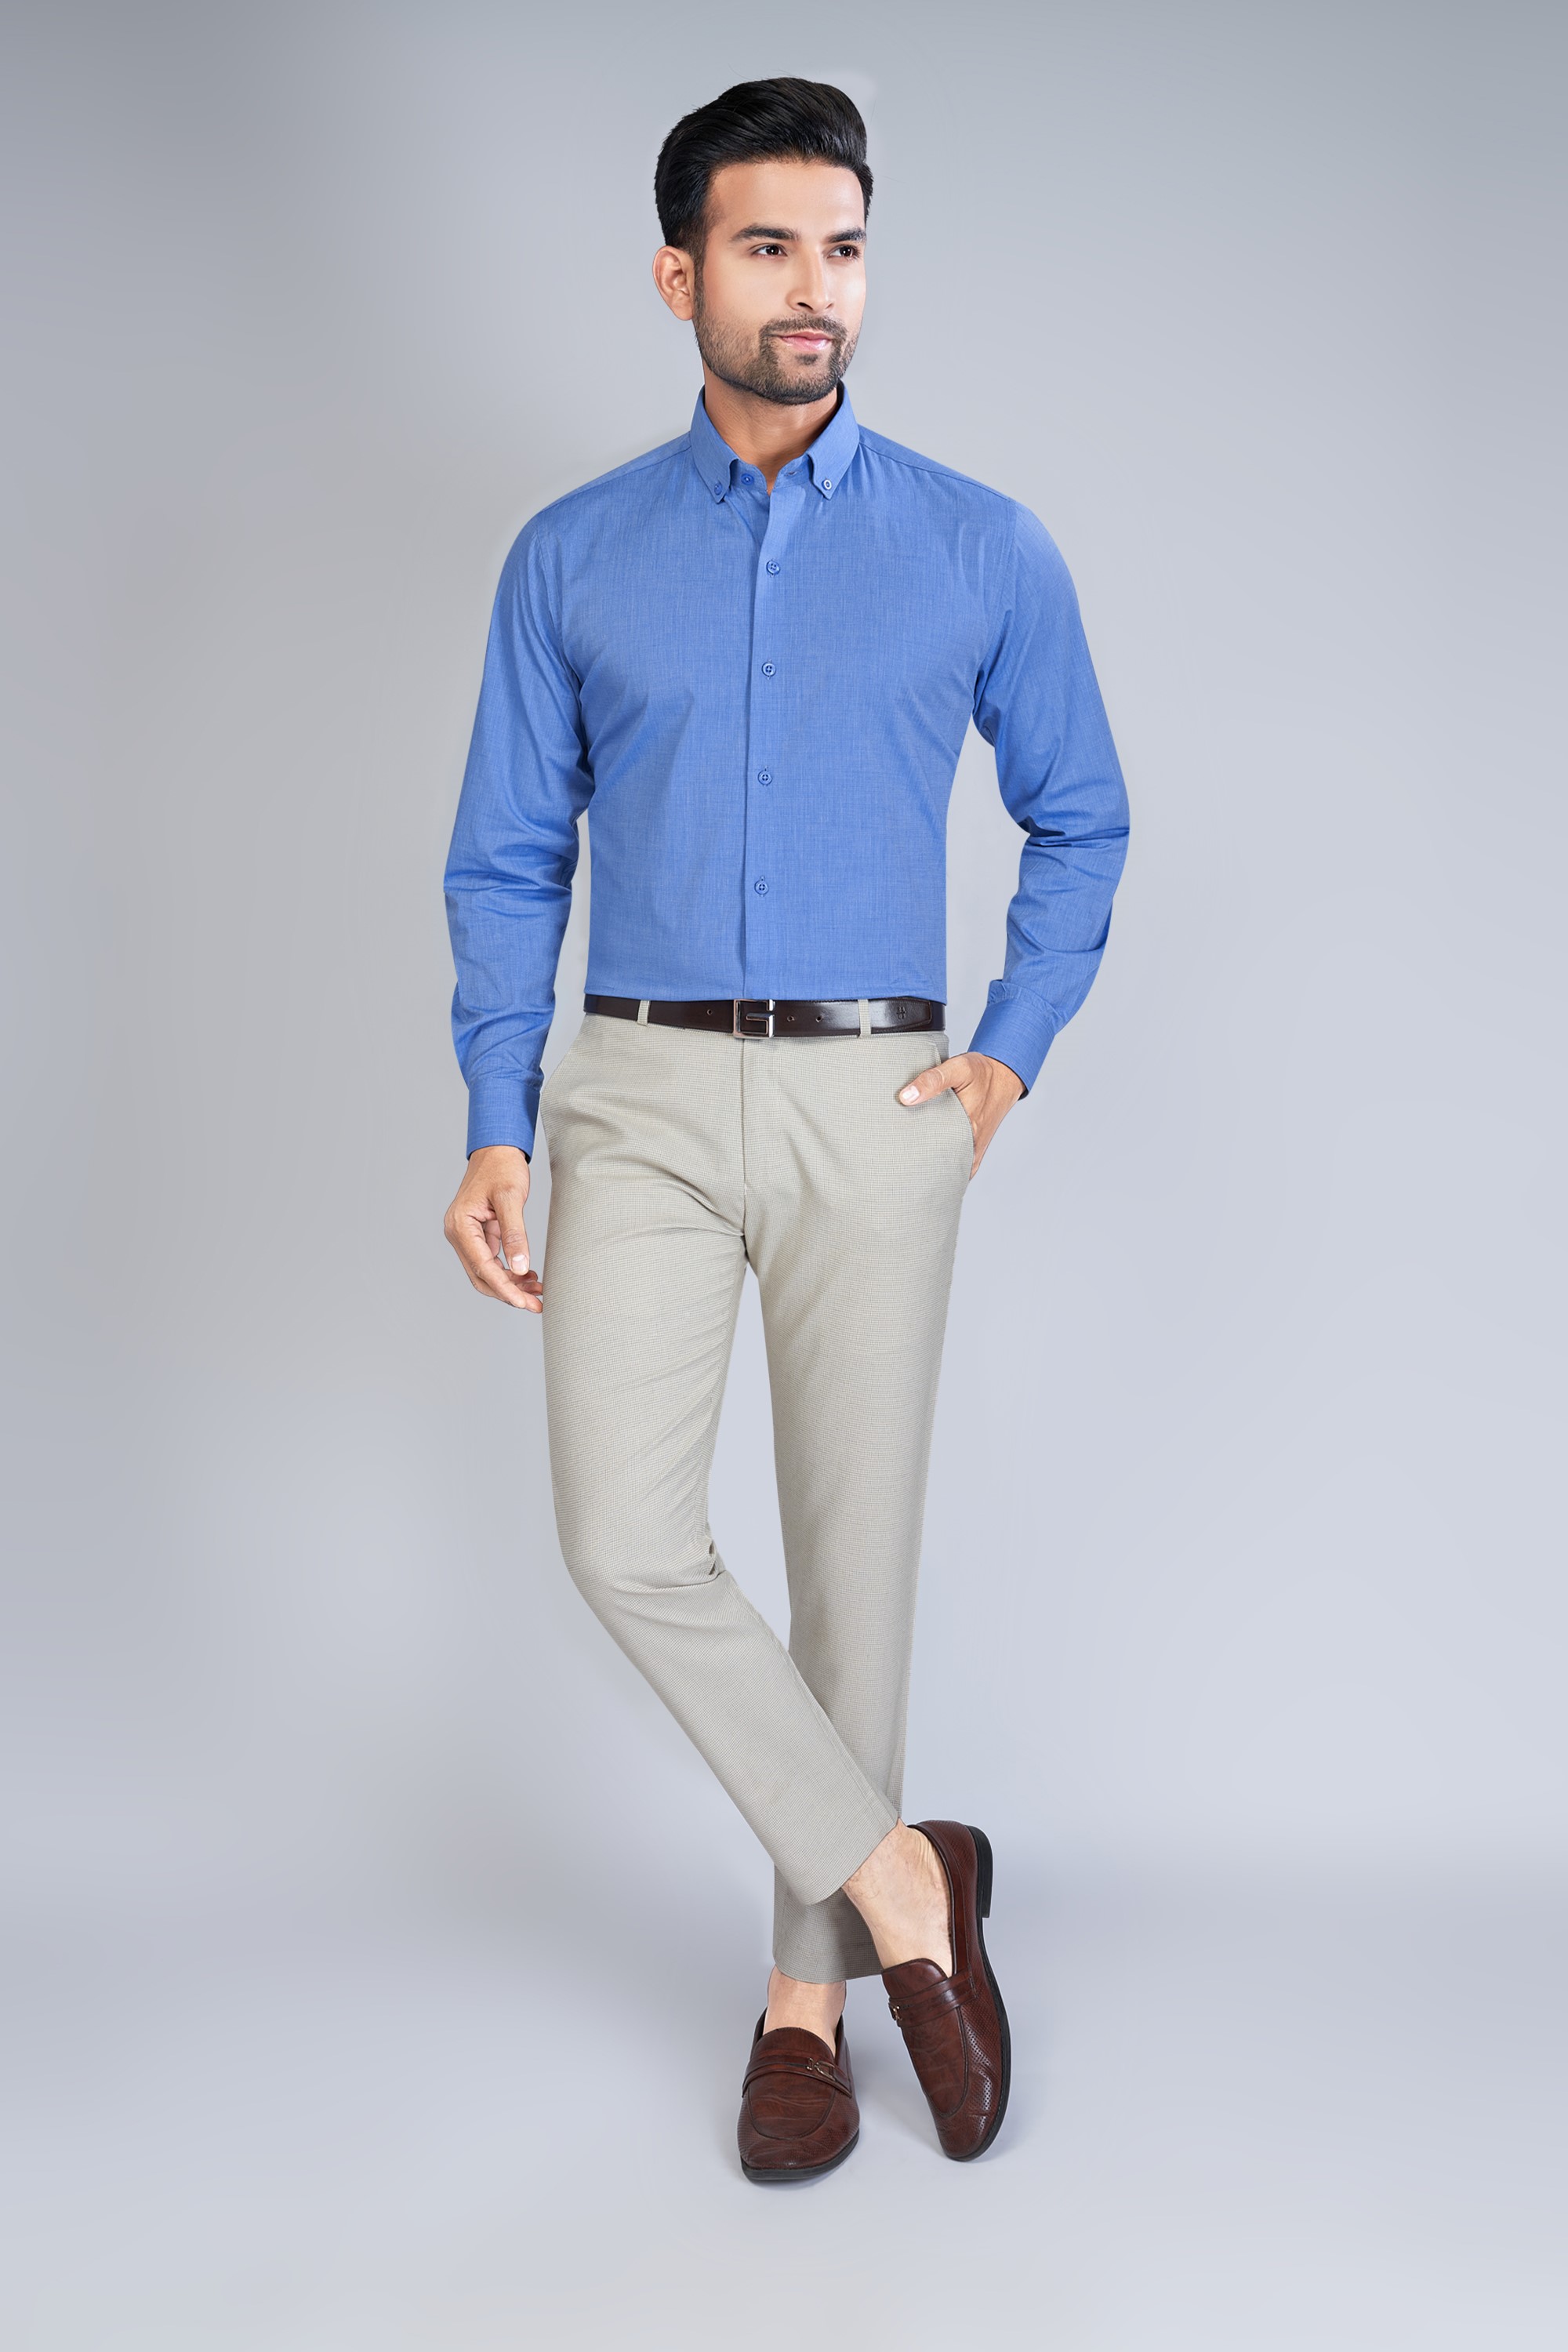 Cotton Blue Shirt for Men